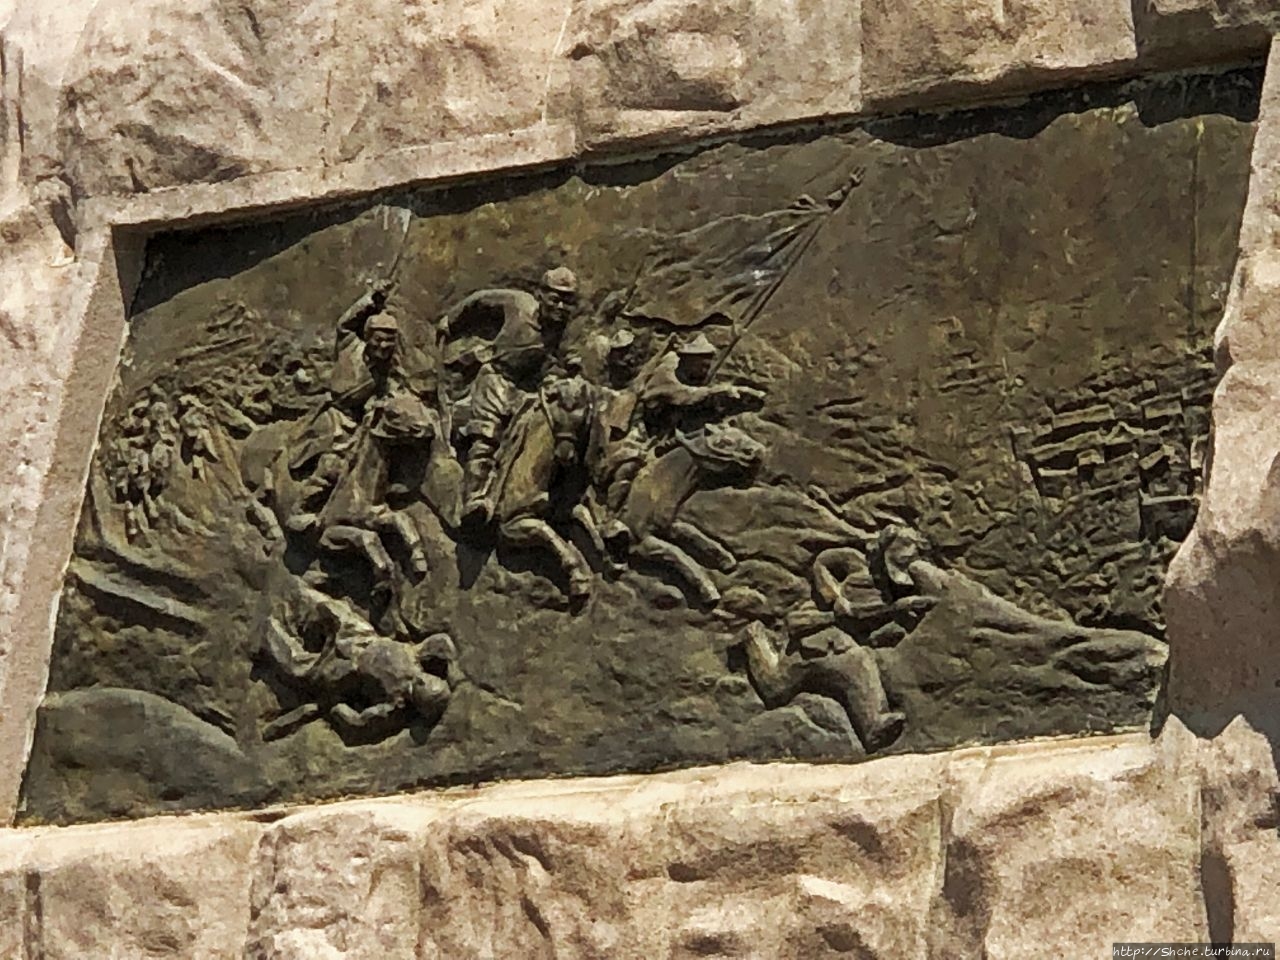 Памятник Сухэ-Батору - главному революционеру Монголии